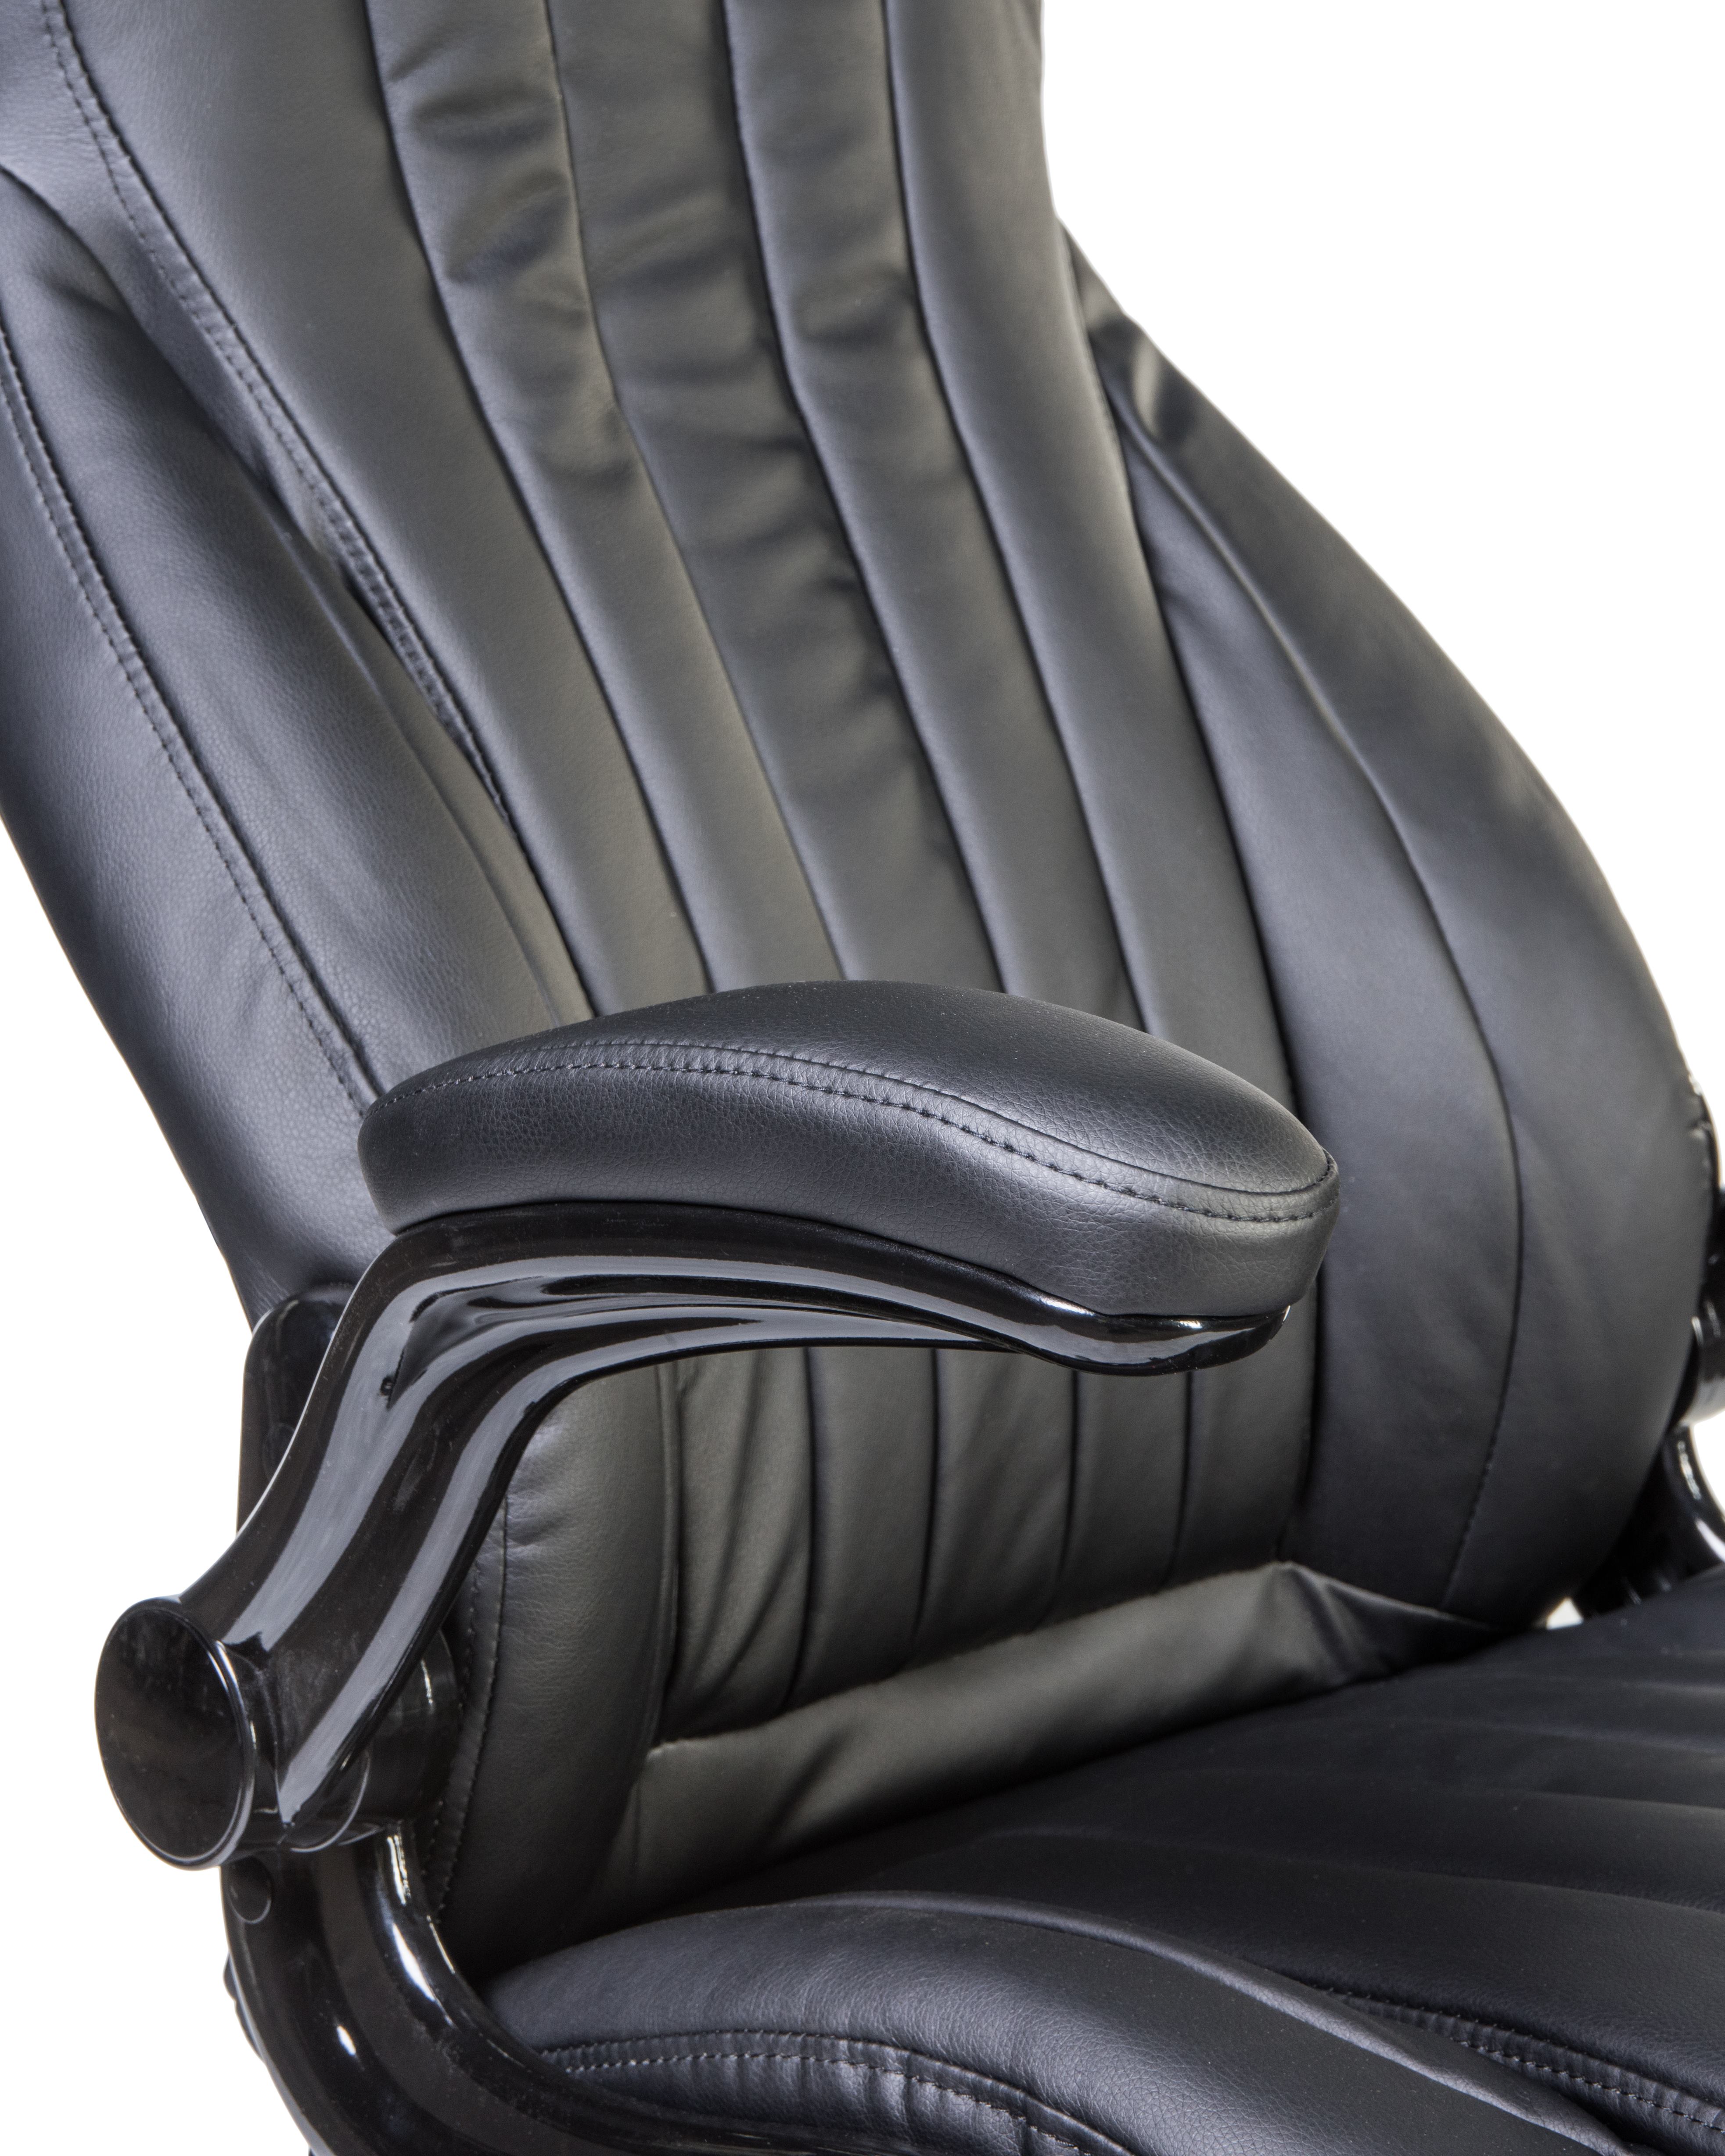 Офисное кресло для руководителей DOBRIN WARREN чёрный